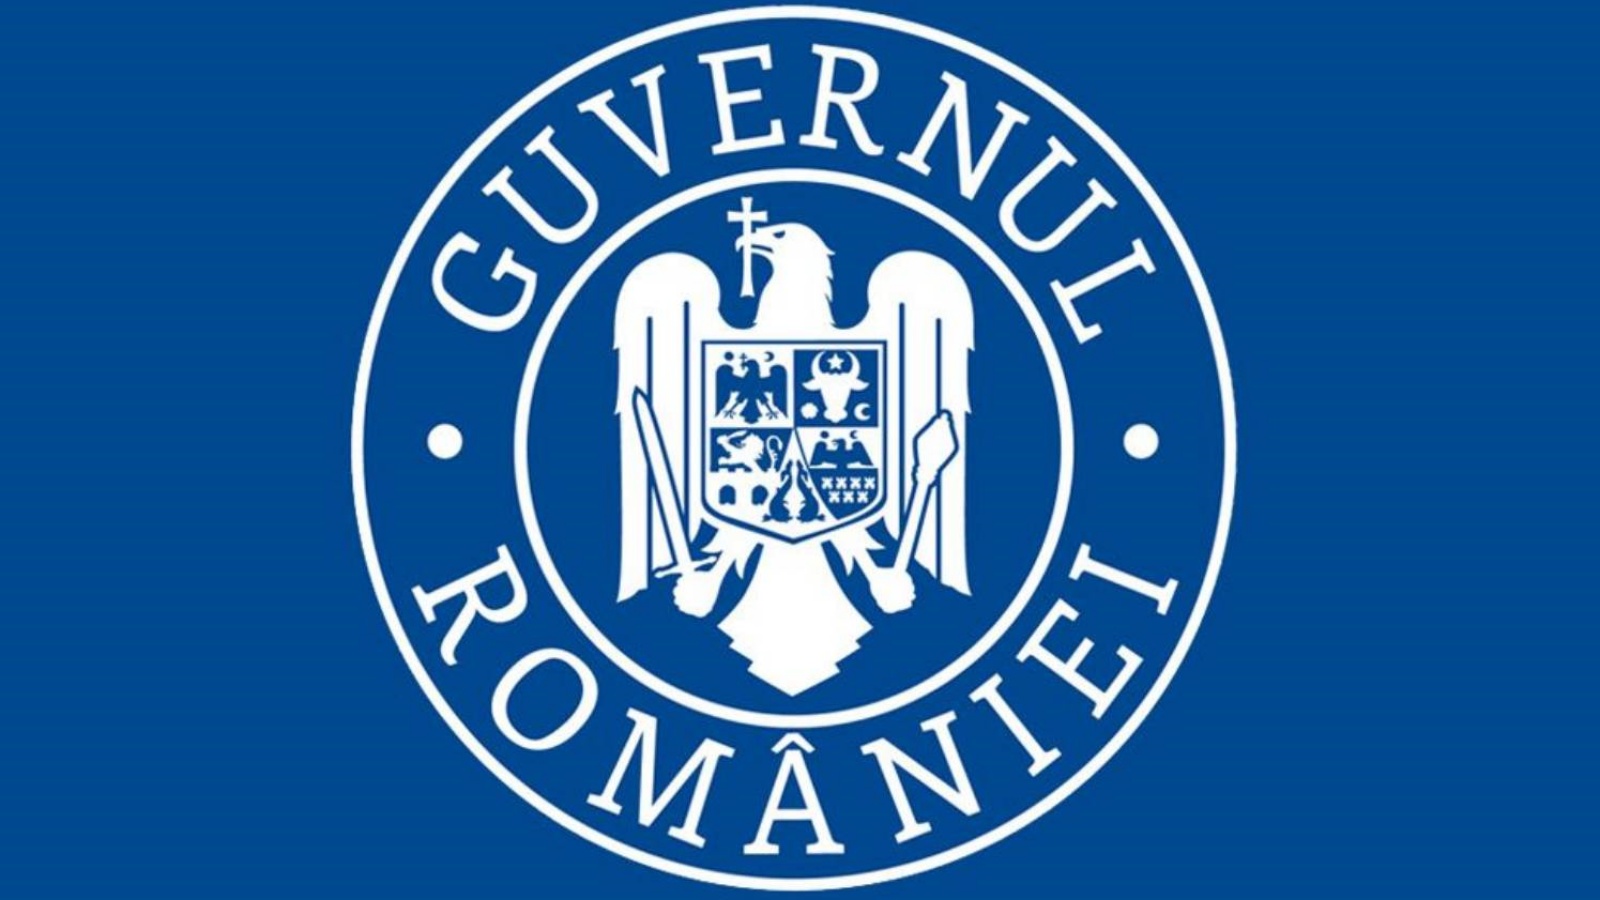 Comisia Europeana Estimeaza o Crestere Economica de 5.8% a Romaniei in 2022